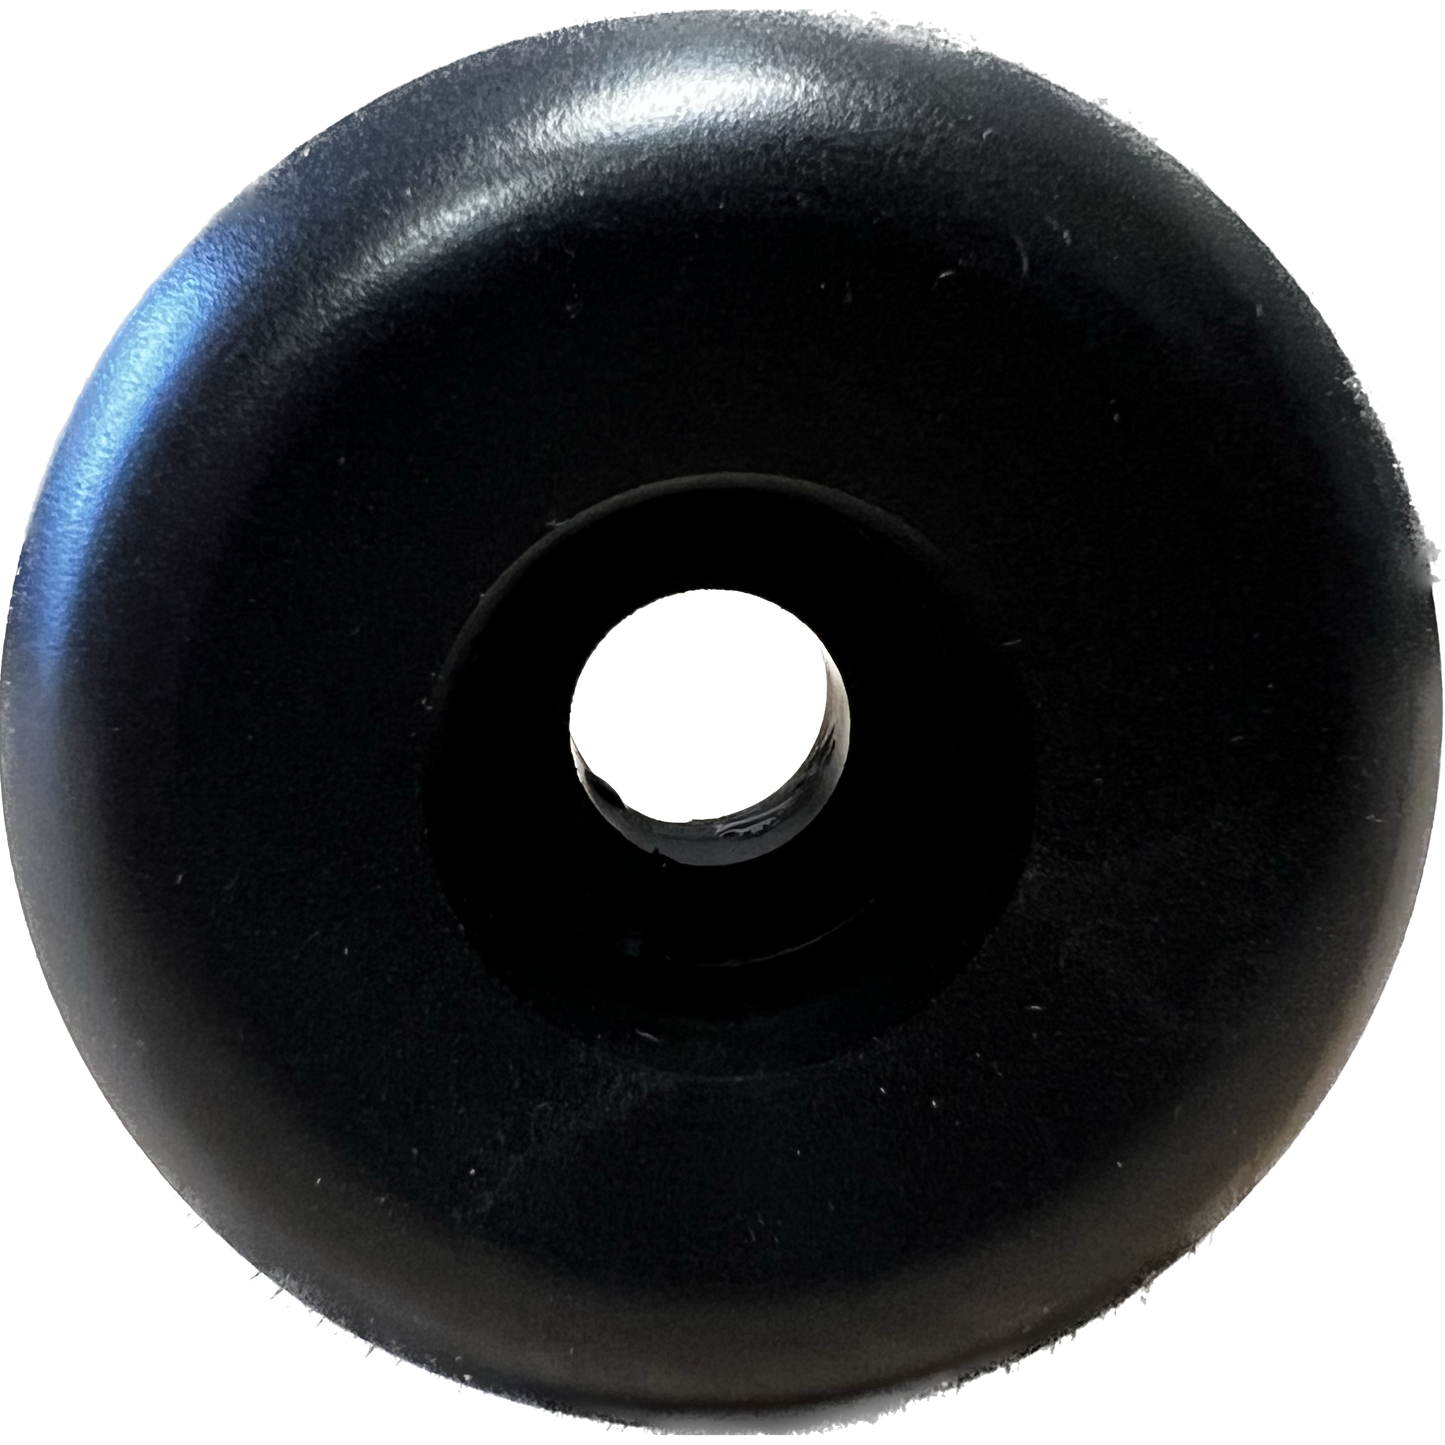 Spitfire Formula Four Conical Full 56mm 101d Set Of 4 Skateboard Wheels Black